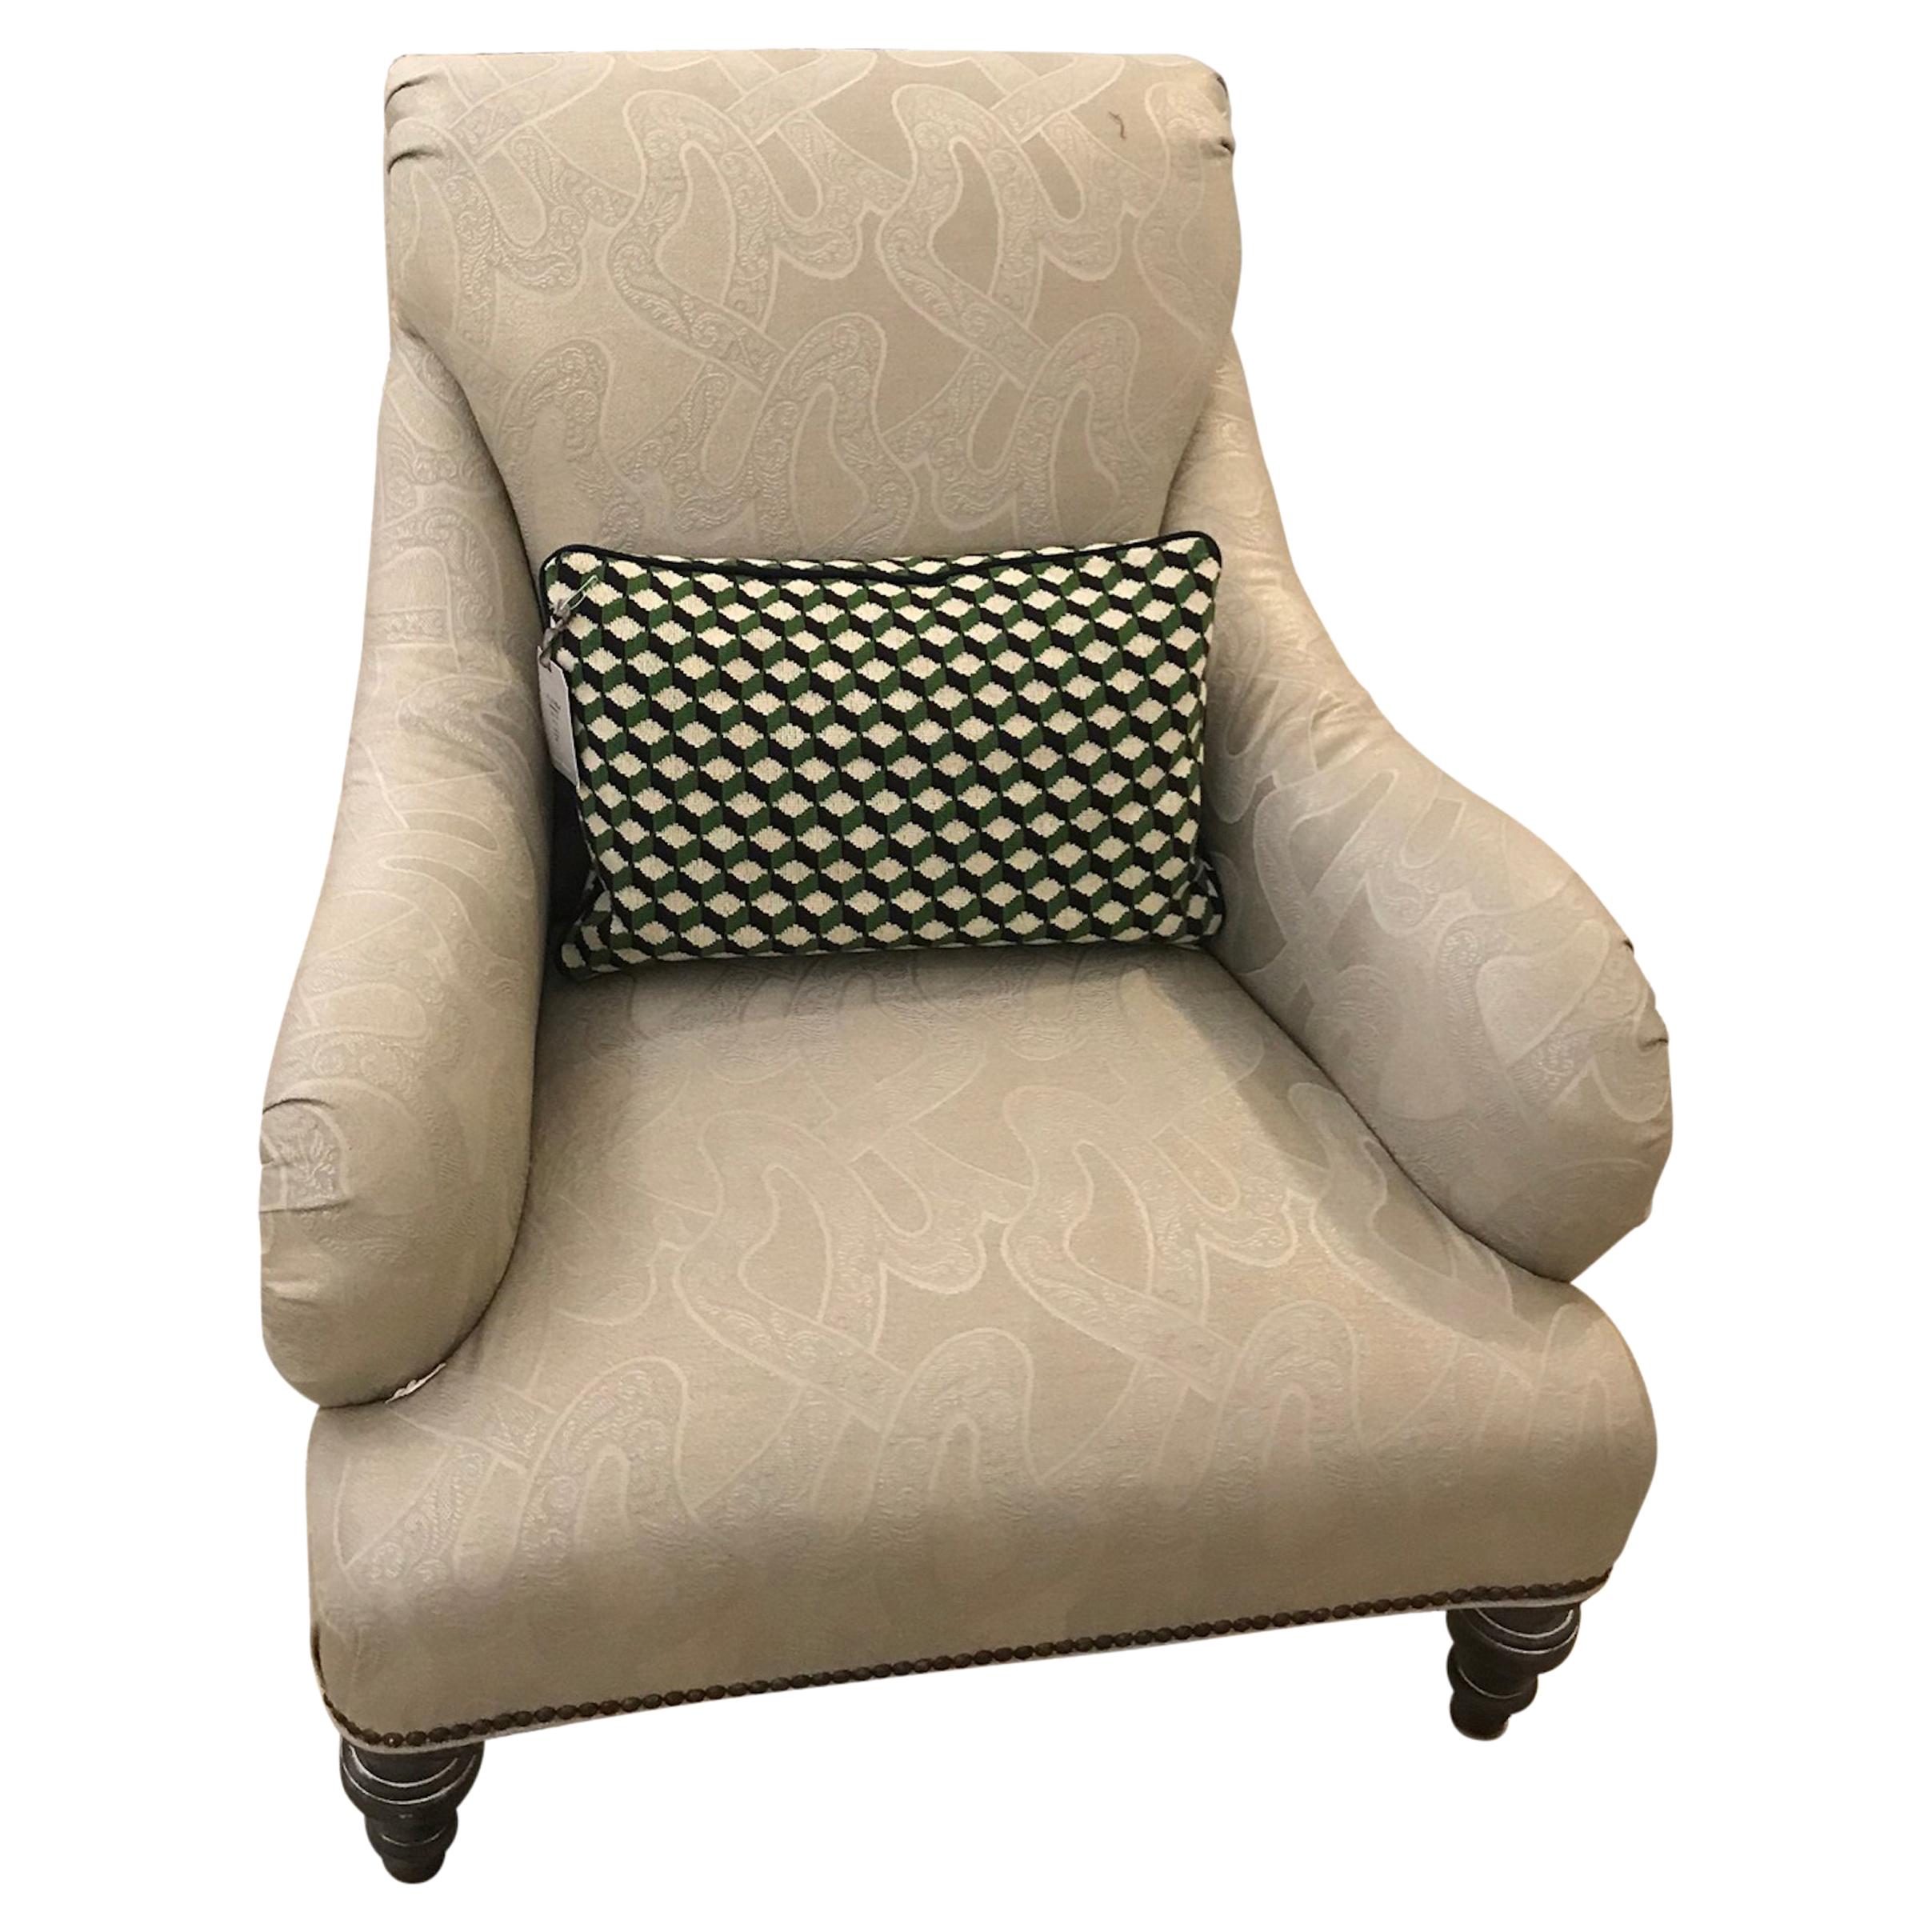 Schumacher Albert Chair Upholstered in Chantilly Fabric- Sample